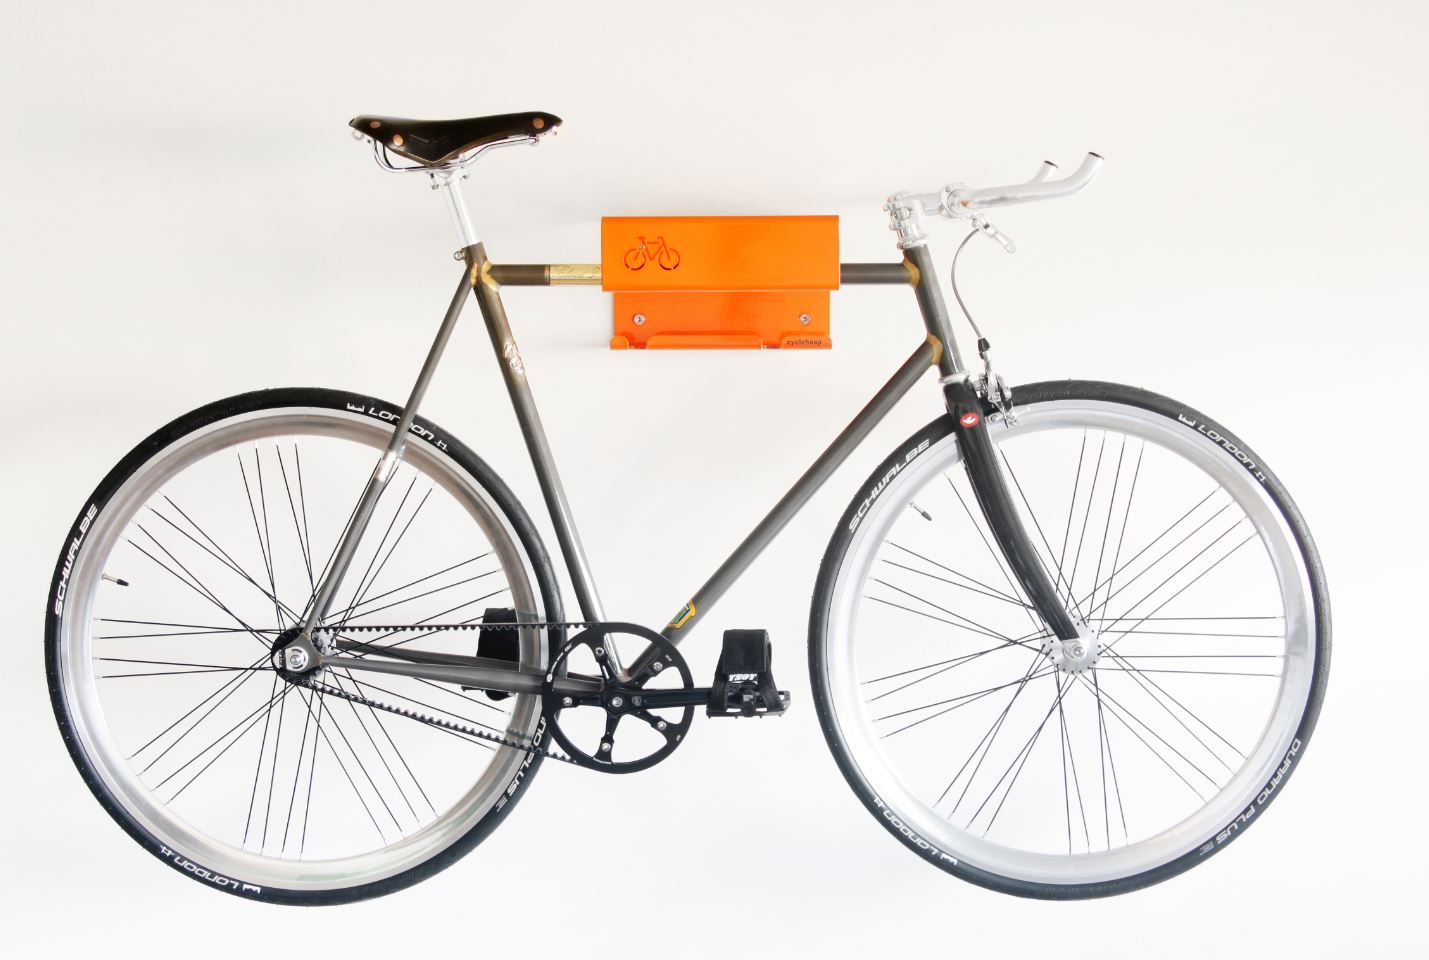 מתקן מדף תליה לאופניים דגם Bike shelf